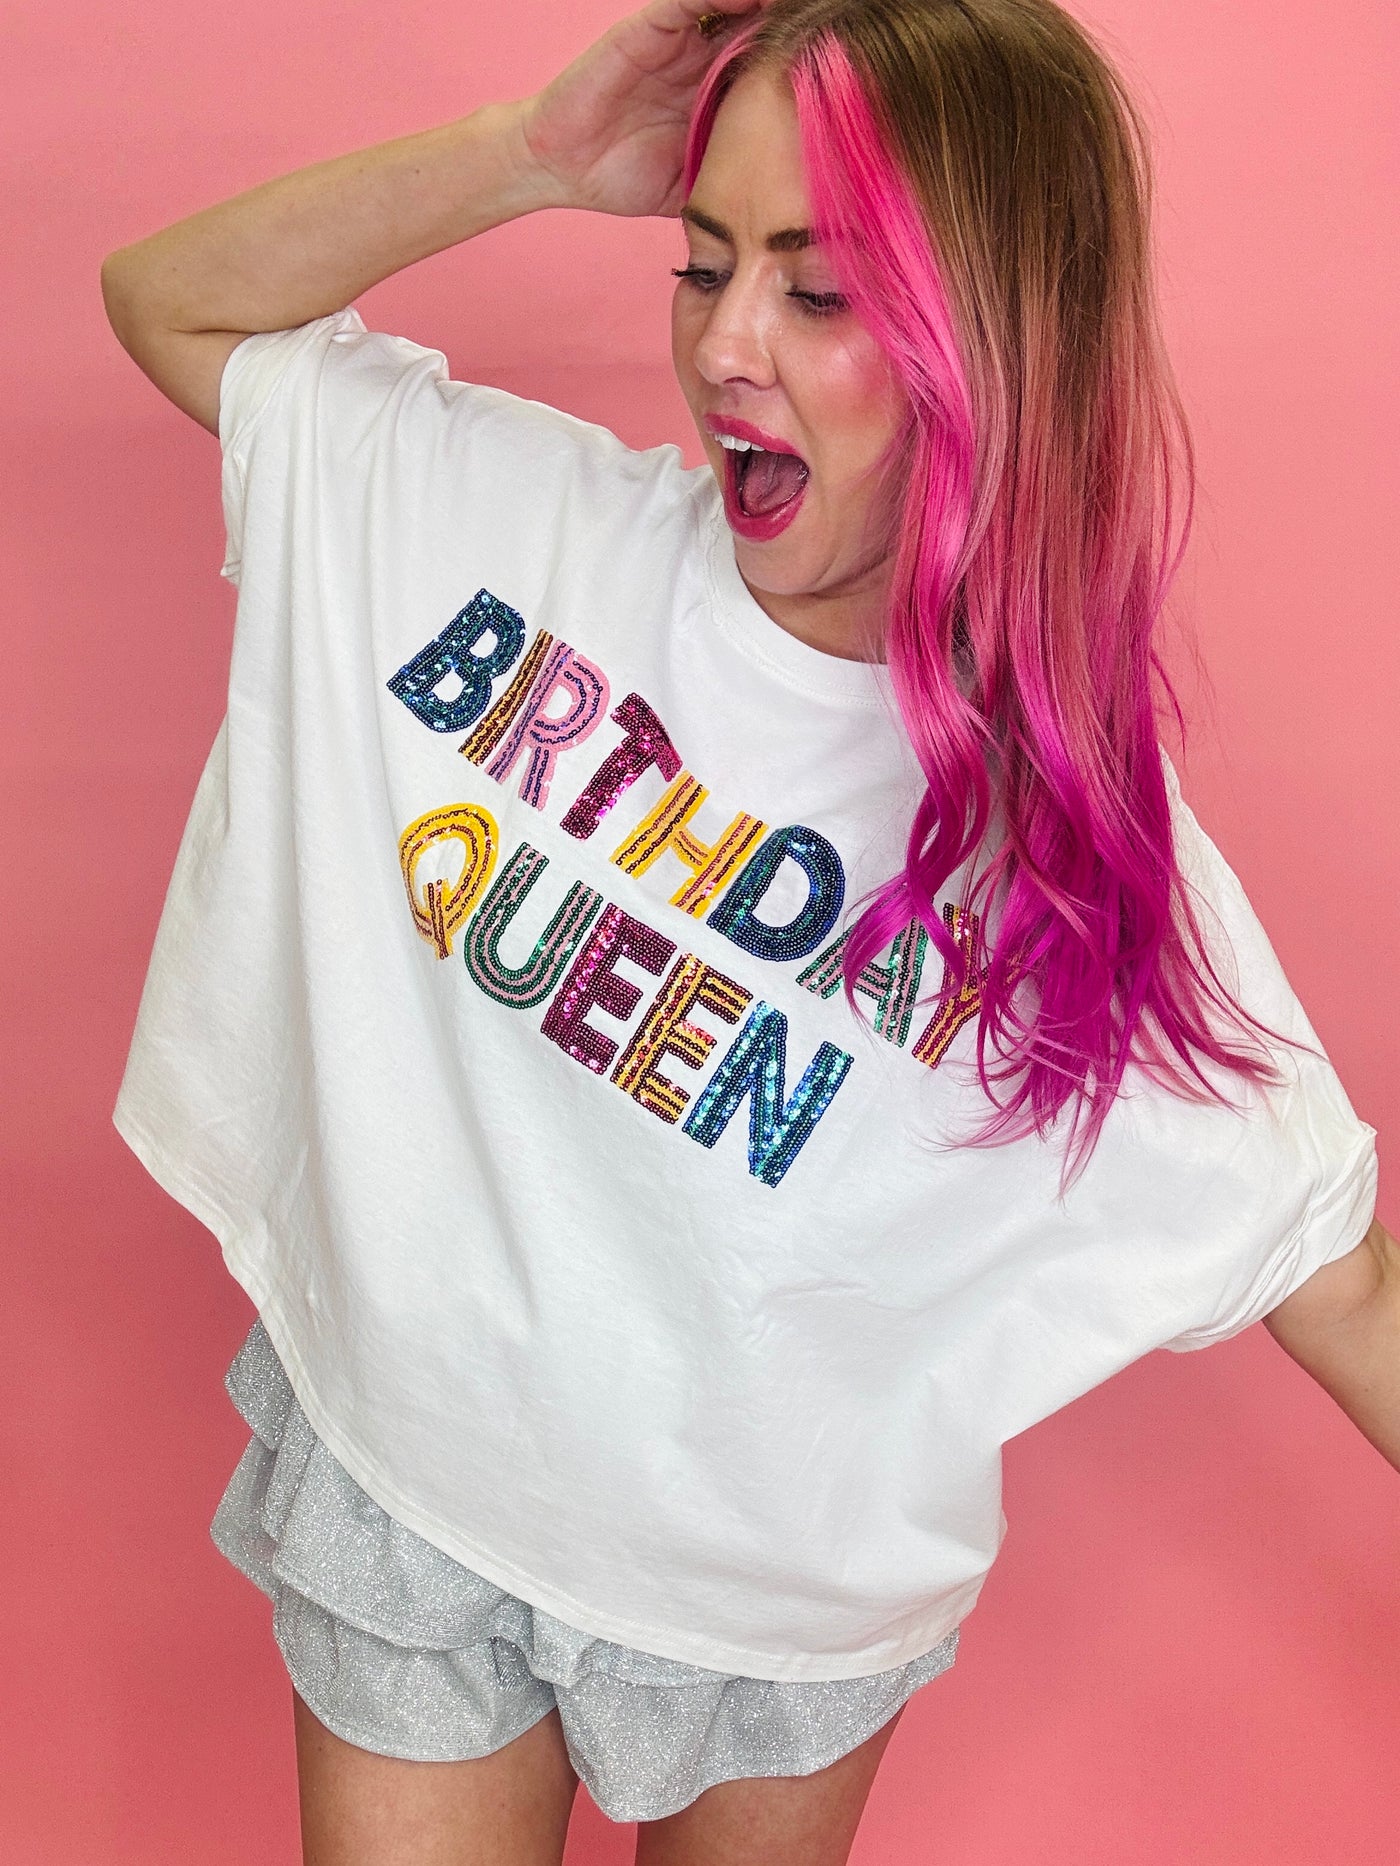 Birthday Queen Sequin Shirt